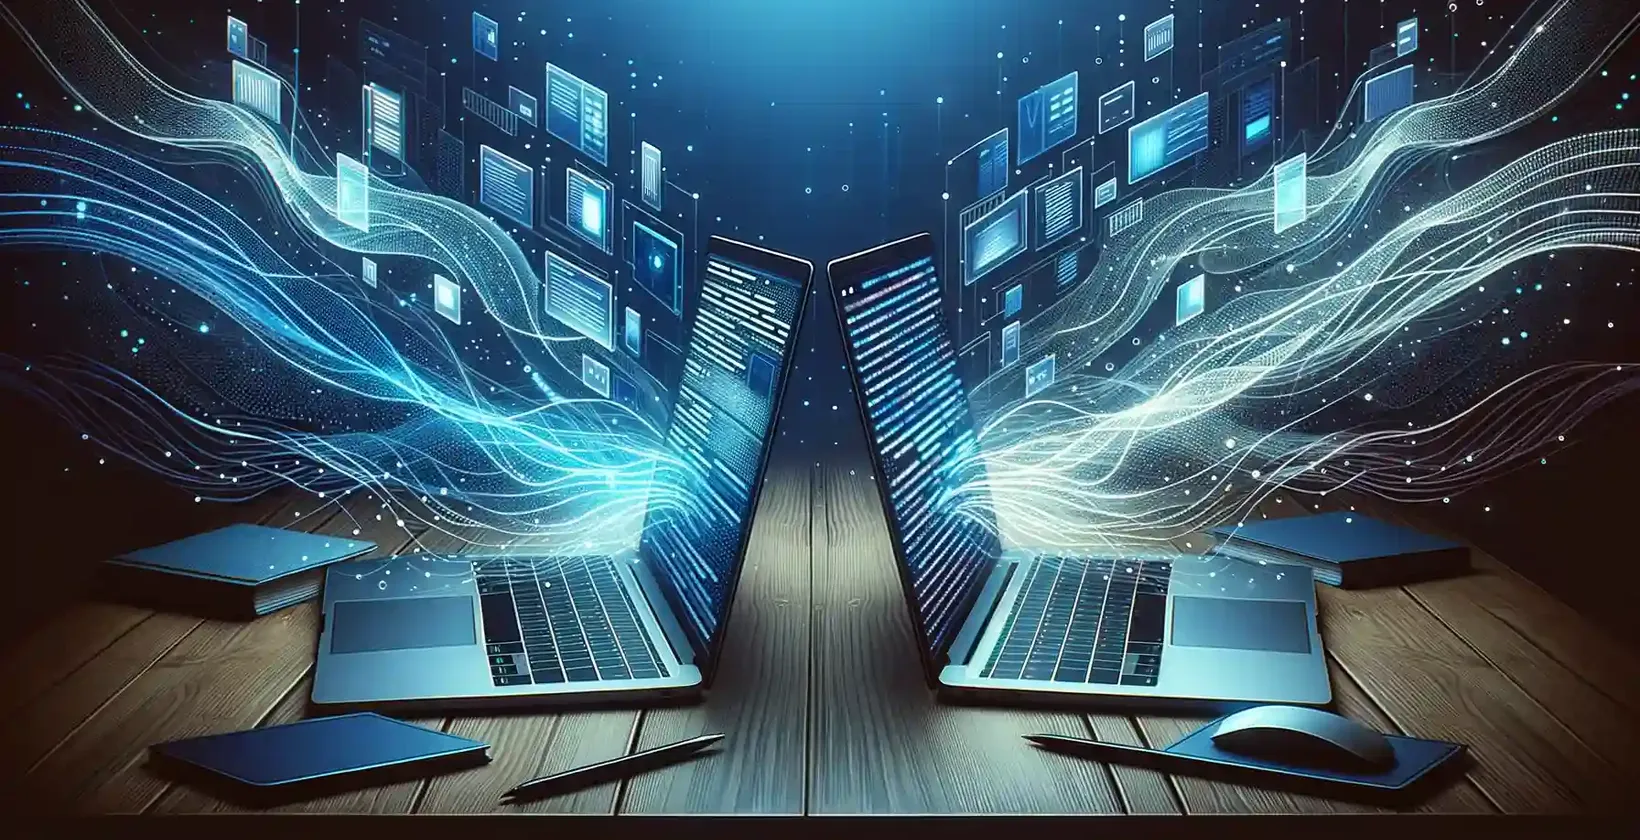 डिजिटल पृष्ठभूमि वाले दो लैपटॉप एक दूसरे से जुड़े हुए हैं